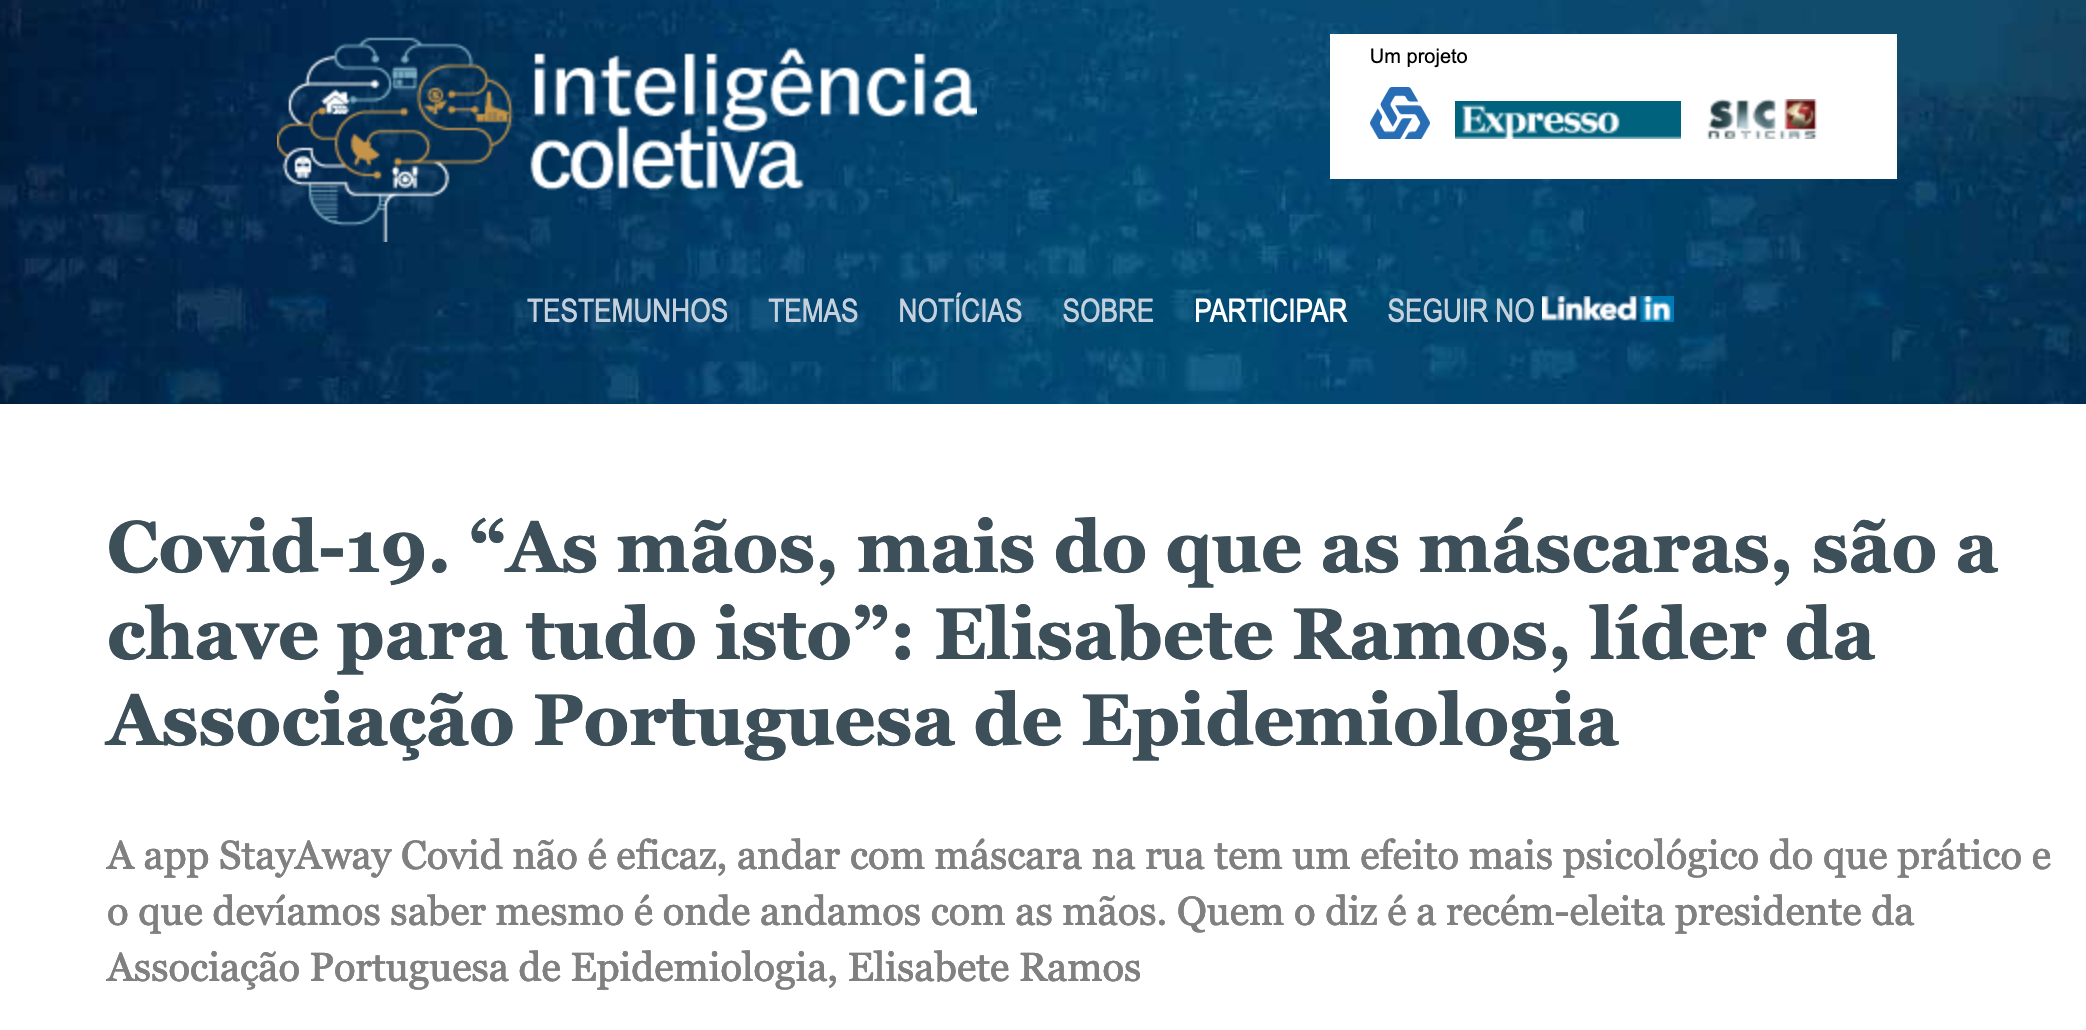 Covid-19. “As mãos, mais do que as máscaras, são a chave para tudo isto”: Elisabete Ramos, líder da Associação Portuguesa de Epidemiologia